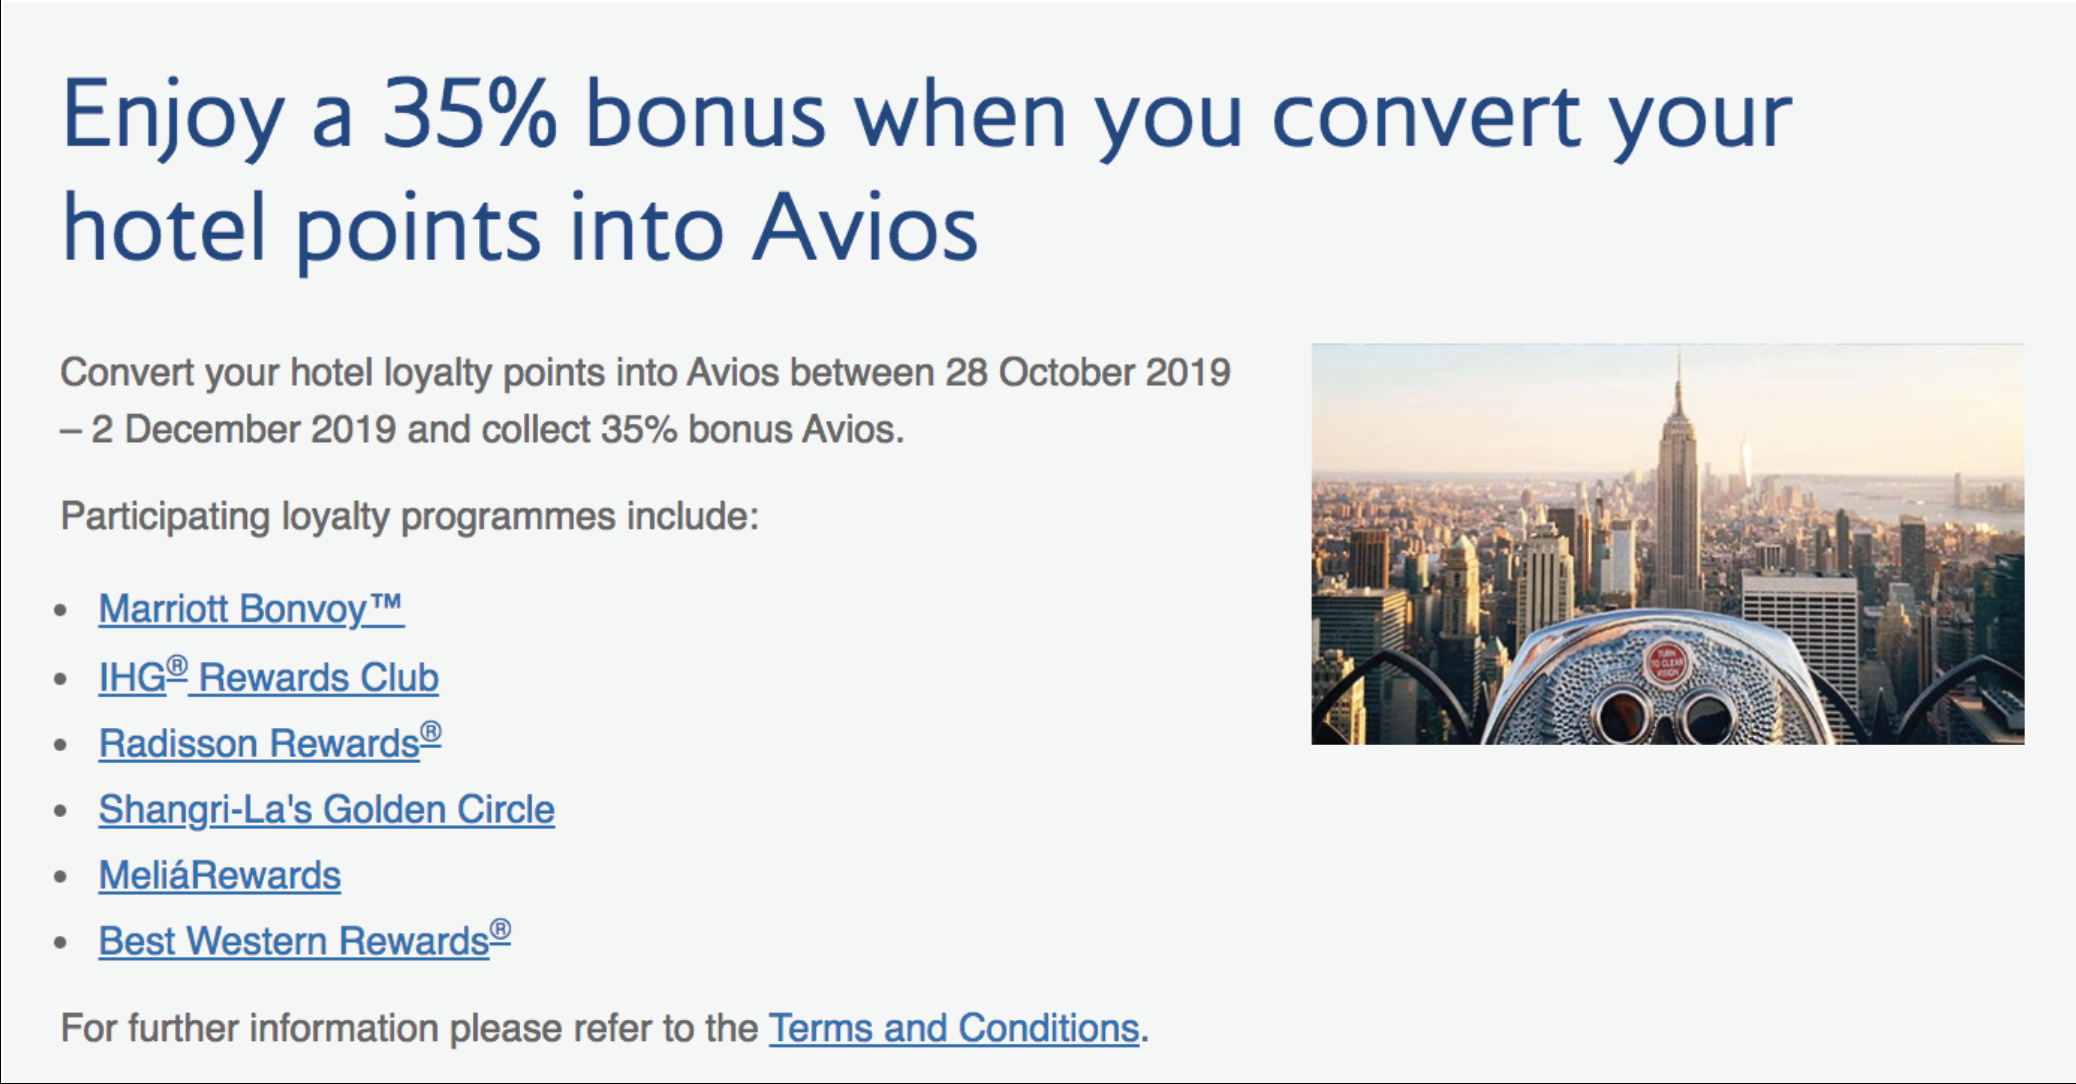 英國航空 British Airways Executive Club 酒店積分轉換優惠！酒店積分轉英航可獲35%額外Avios！